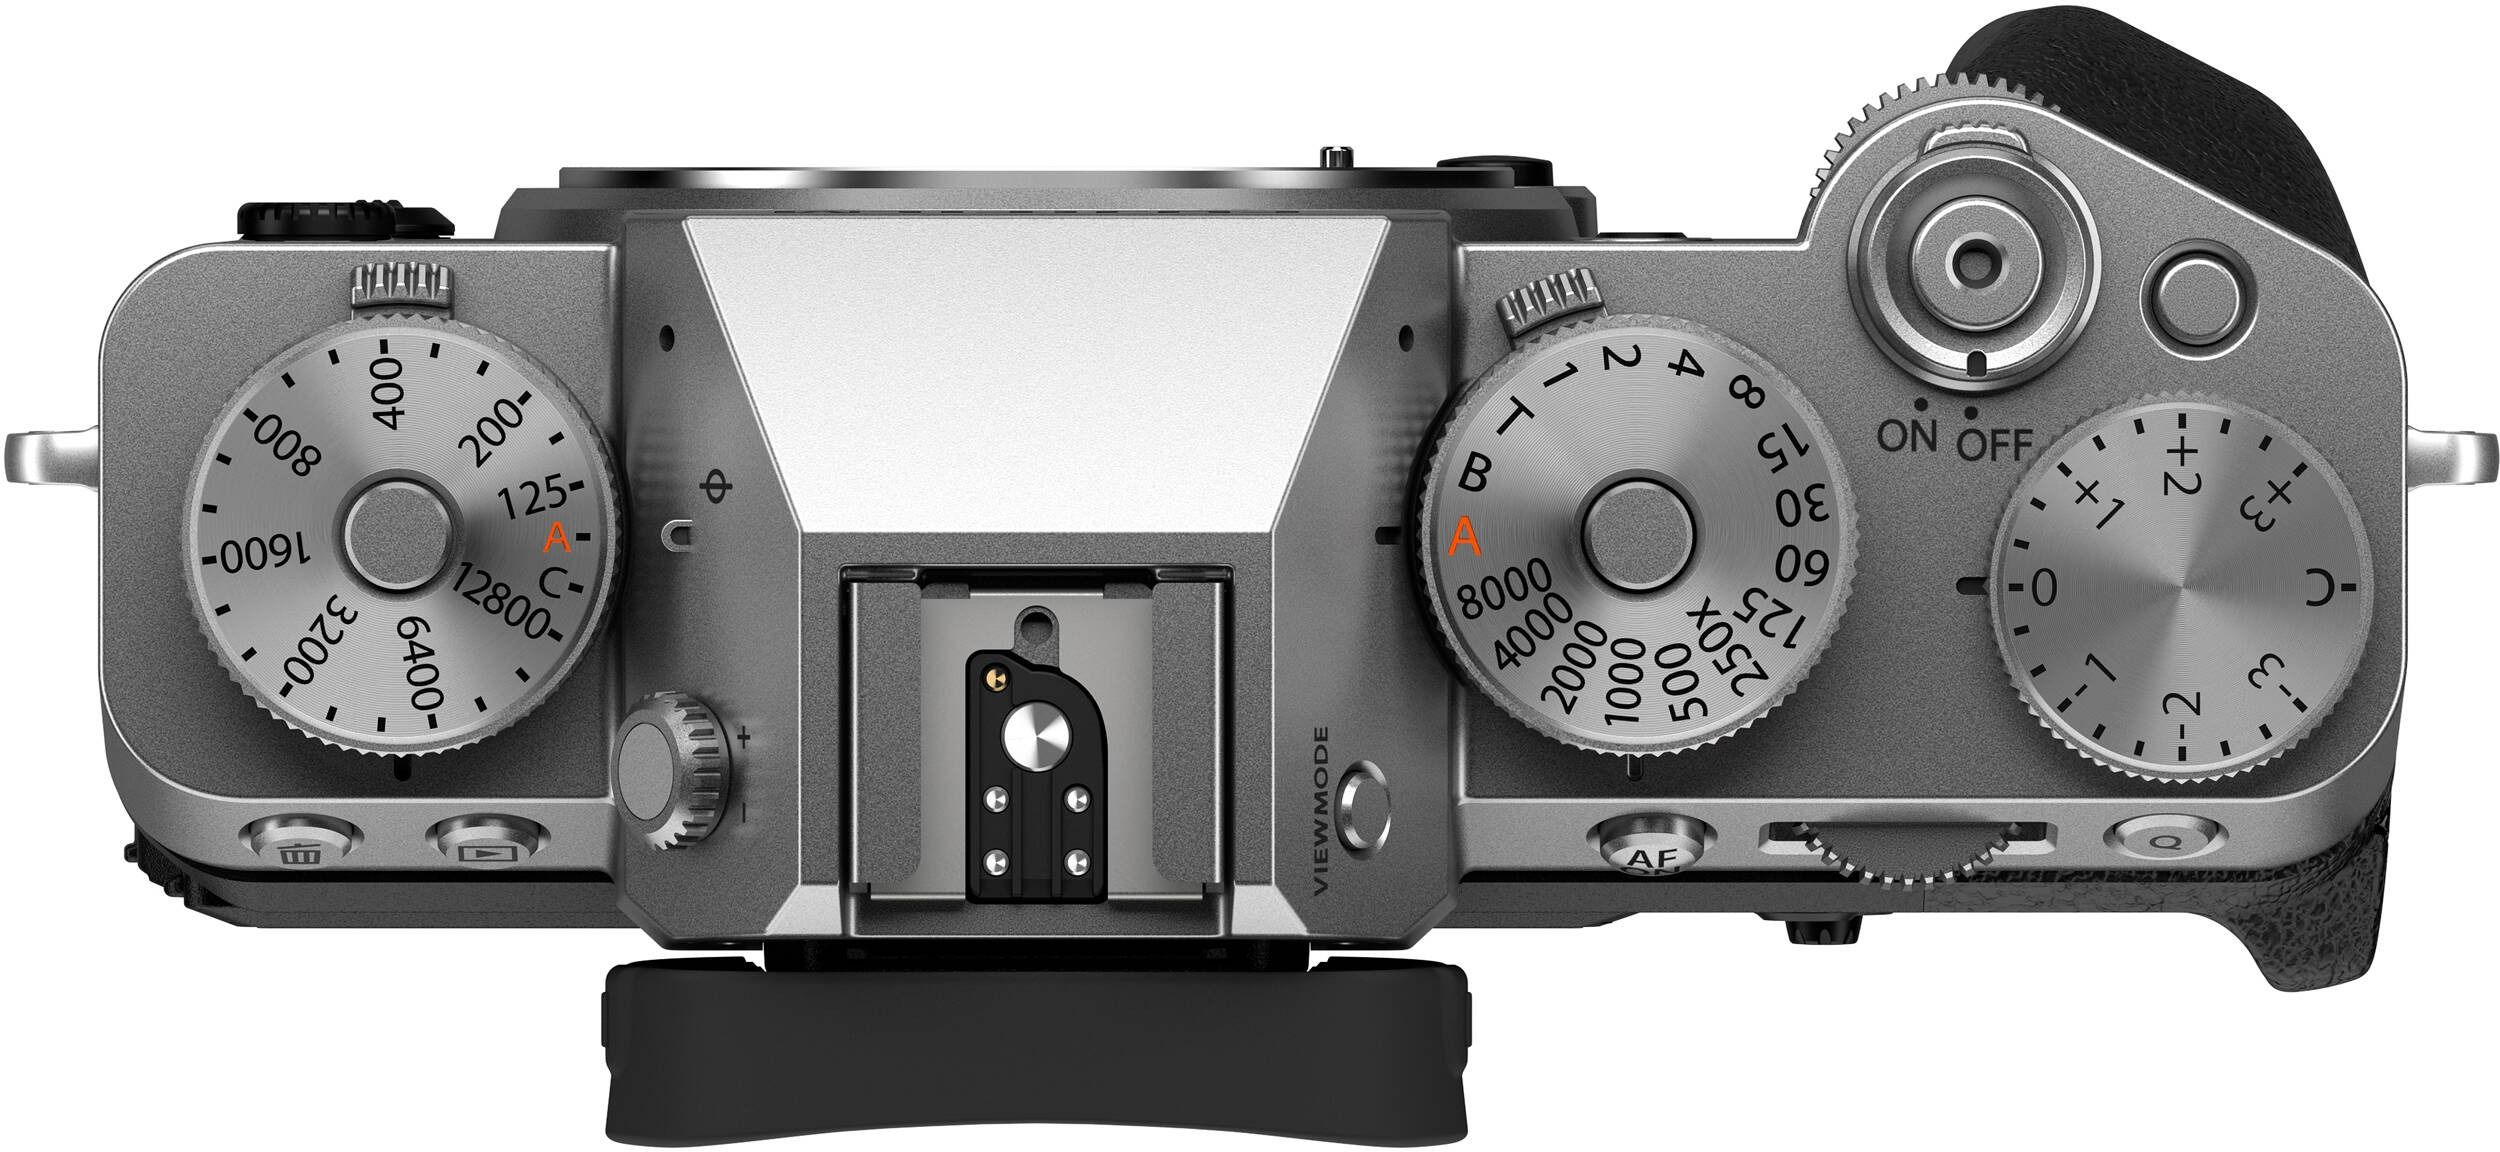 Фотоаппарат FUJIFILM X-T5 + XF 16-50mm F2.8-4.8R LM WR Silver (16842539) фото 5